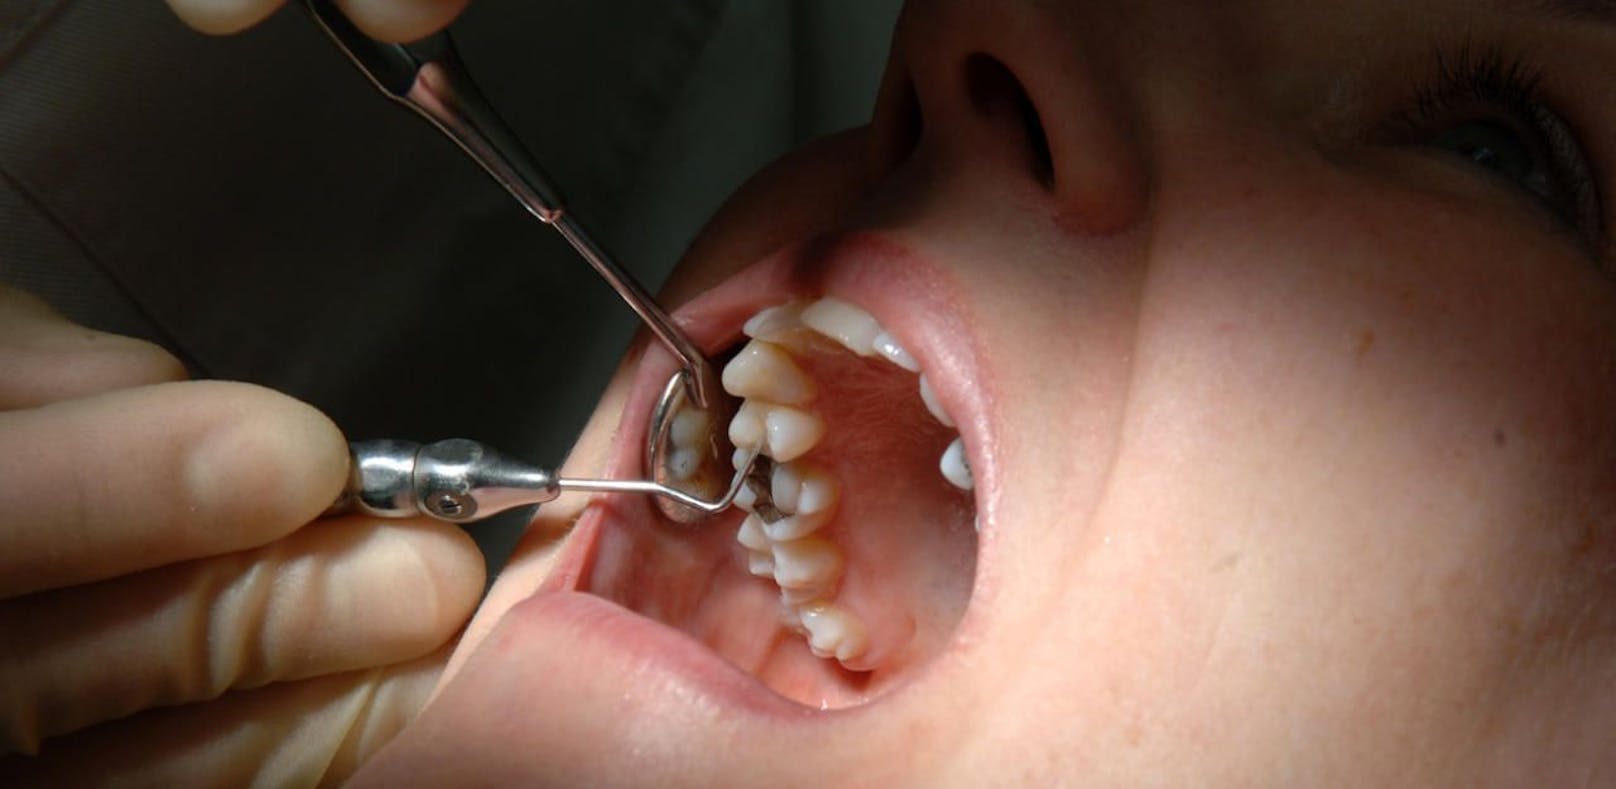 Mit starkem Zahnweh musste ein Frau sich auf Arztsuche begeben.